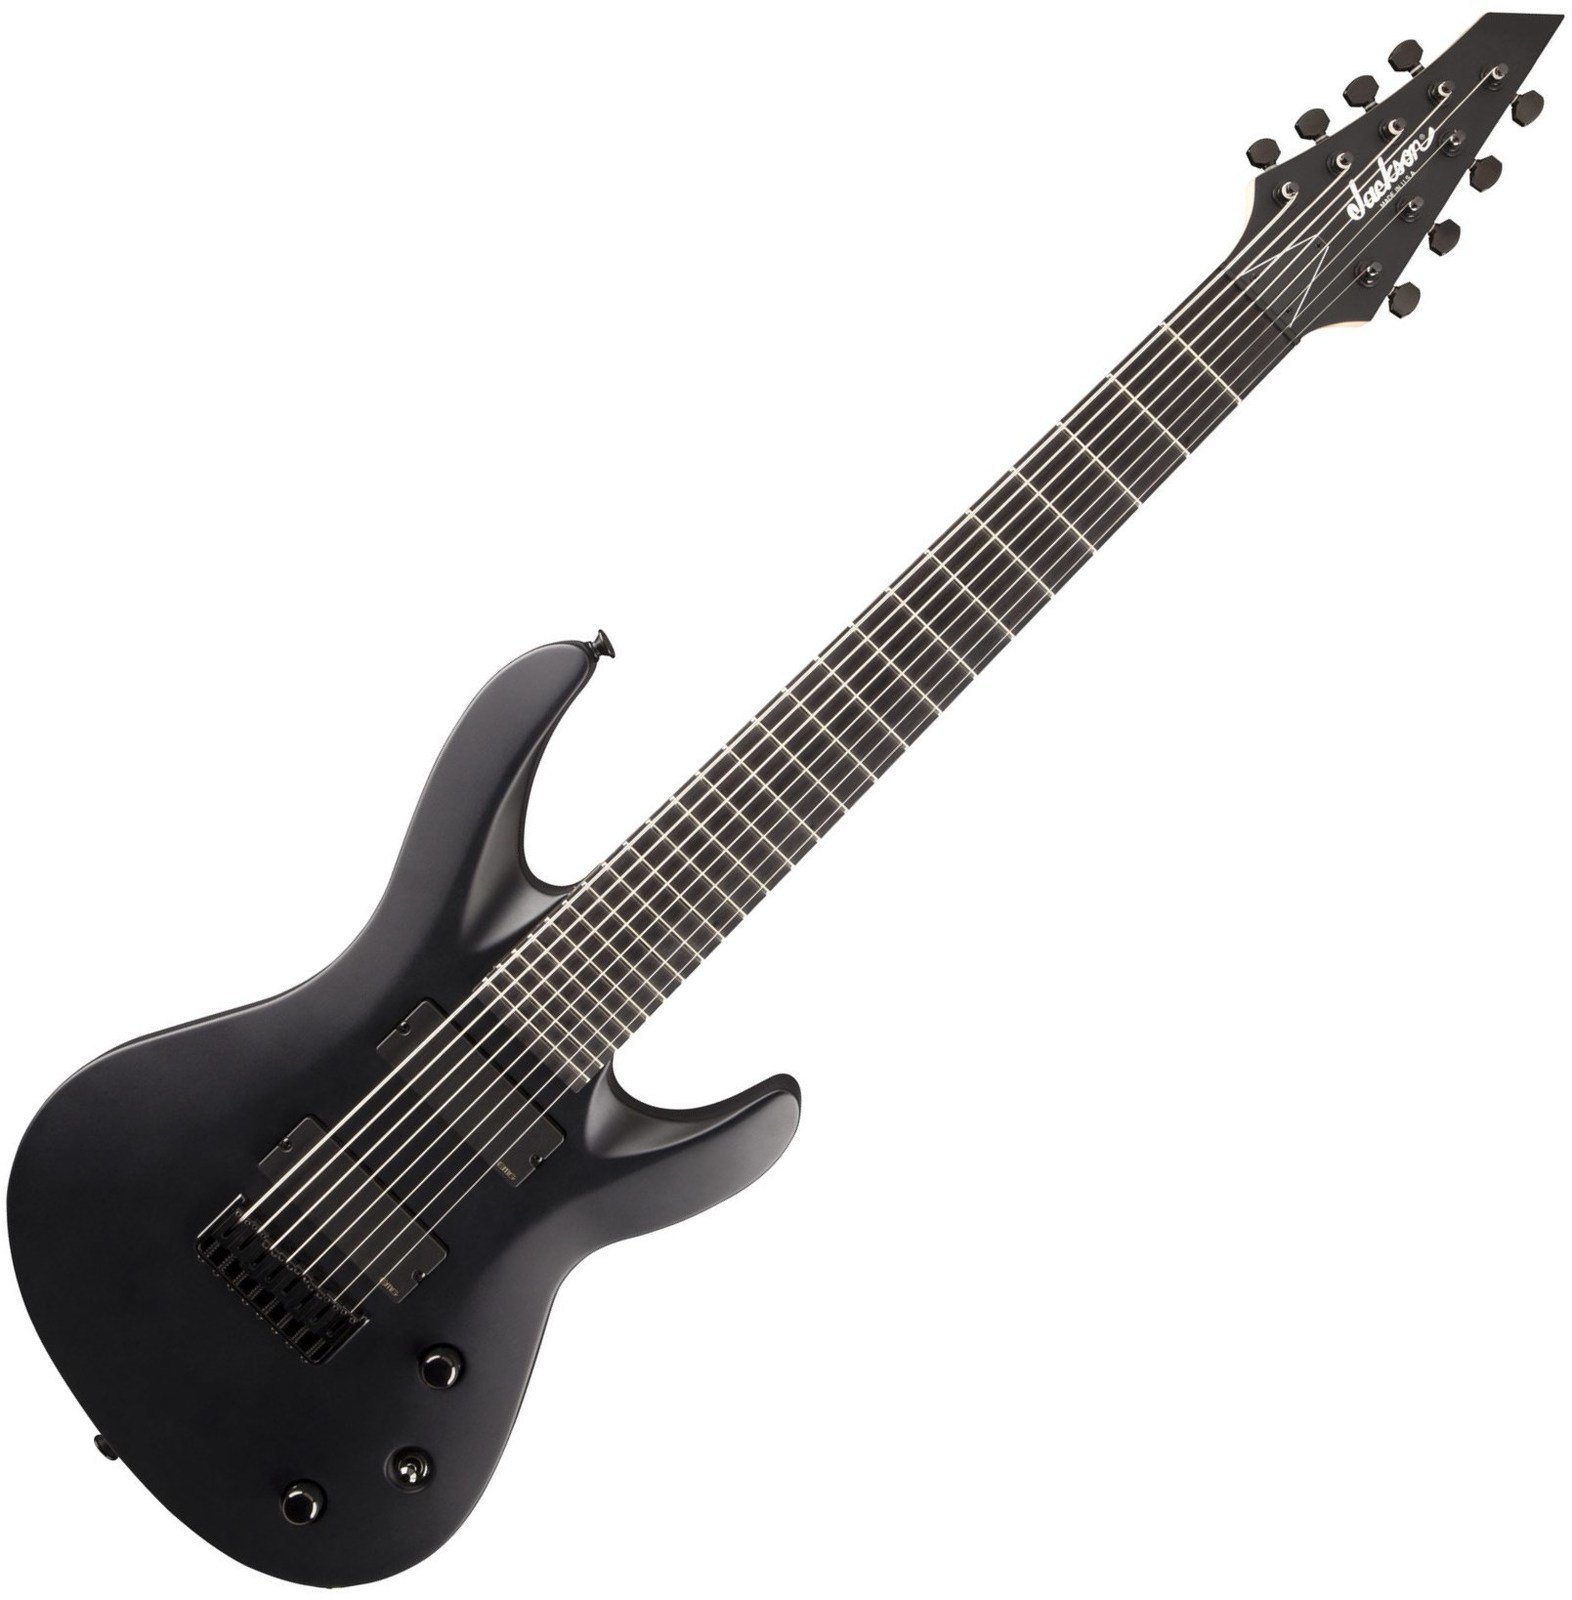 8χορδη Ηλεκτρική Κιθάρα Jackson USA Select B8MG Deluxe Satin Black with Case